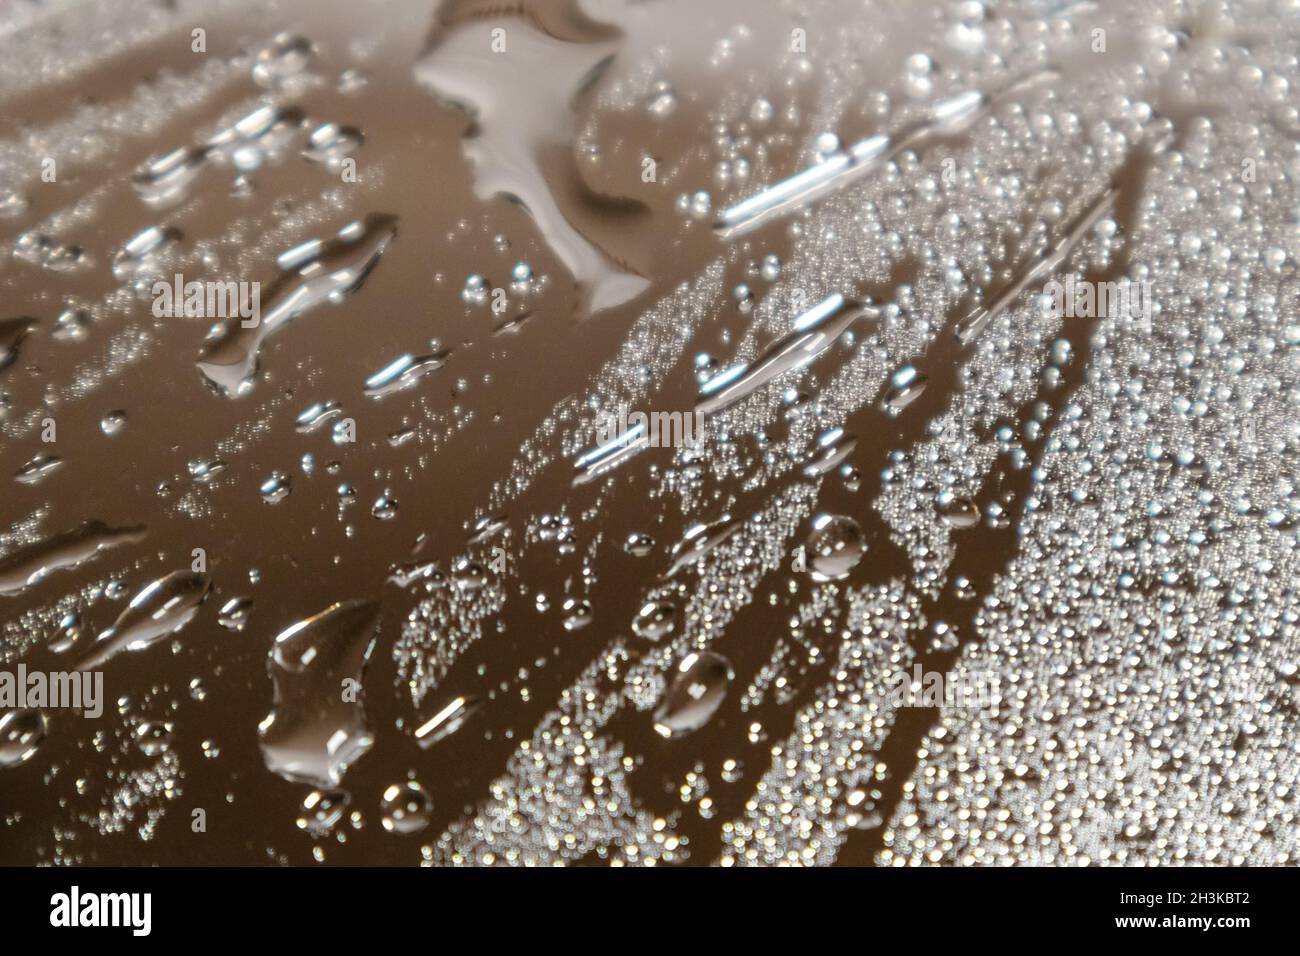 Macro argent de la surface en verre miroir brillant humide avec réflexion et gouttes d'eau.Mise au point sélective et flou Banque D'Images